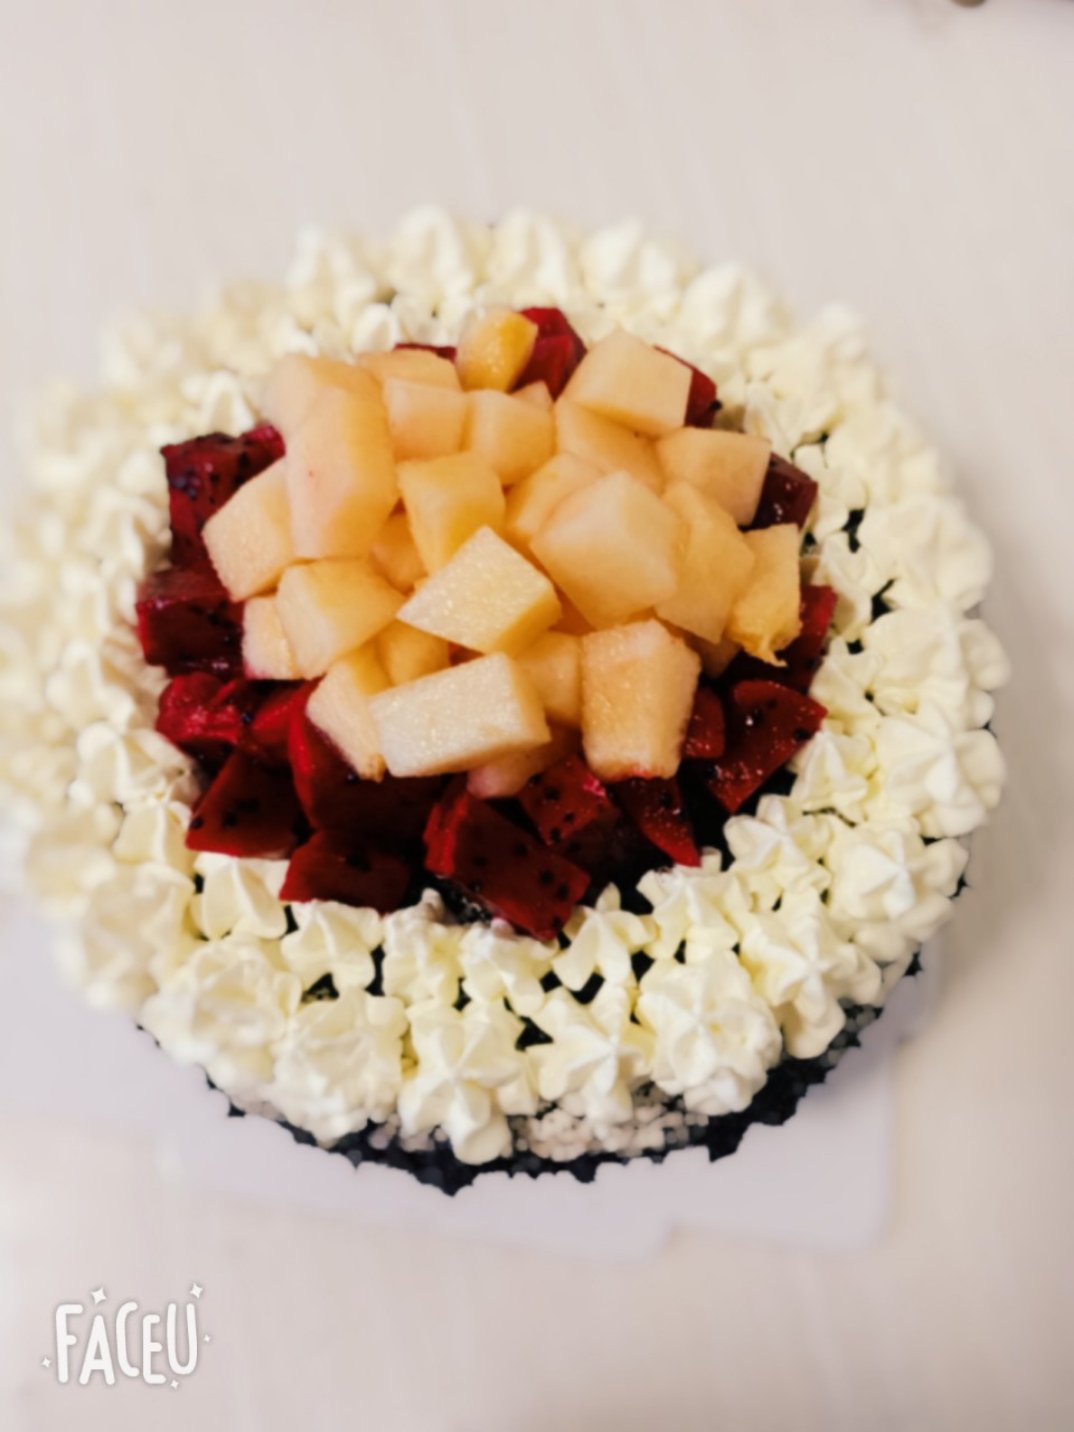 水果生日蛋糕8寸